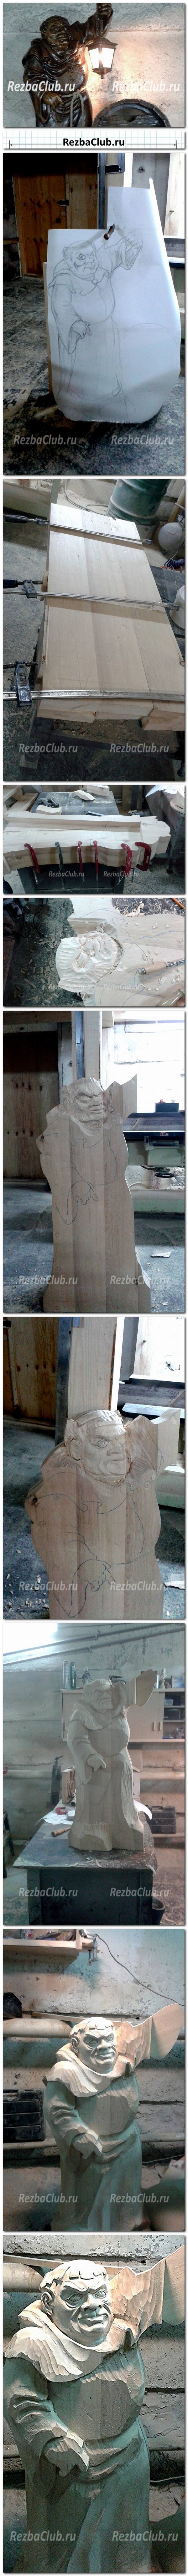 Инструкция 1 - Фигура Как вырезать из дерева мини бар в форме монаха с фонарем